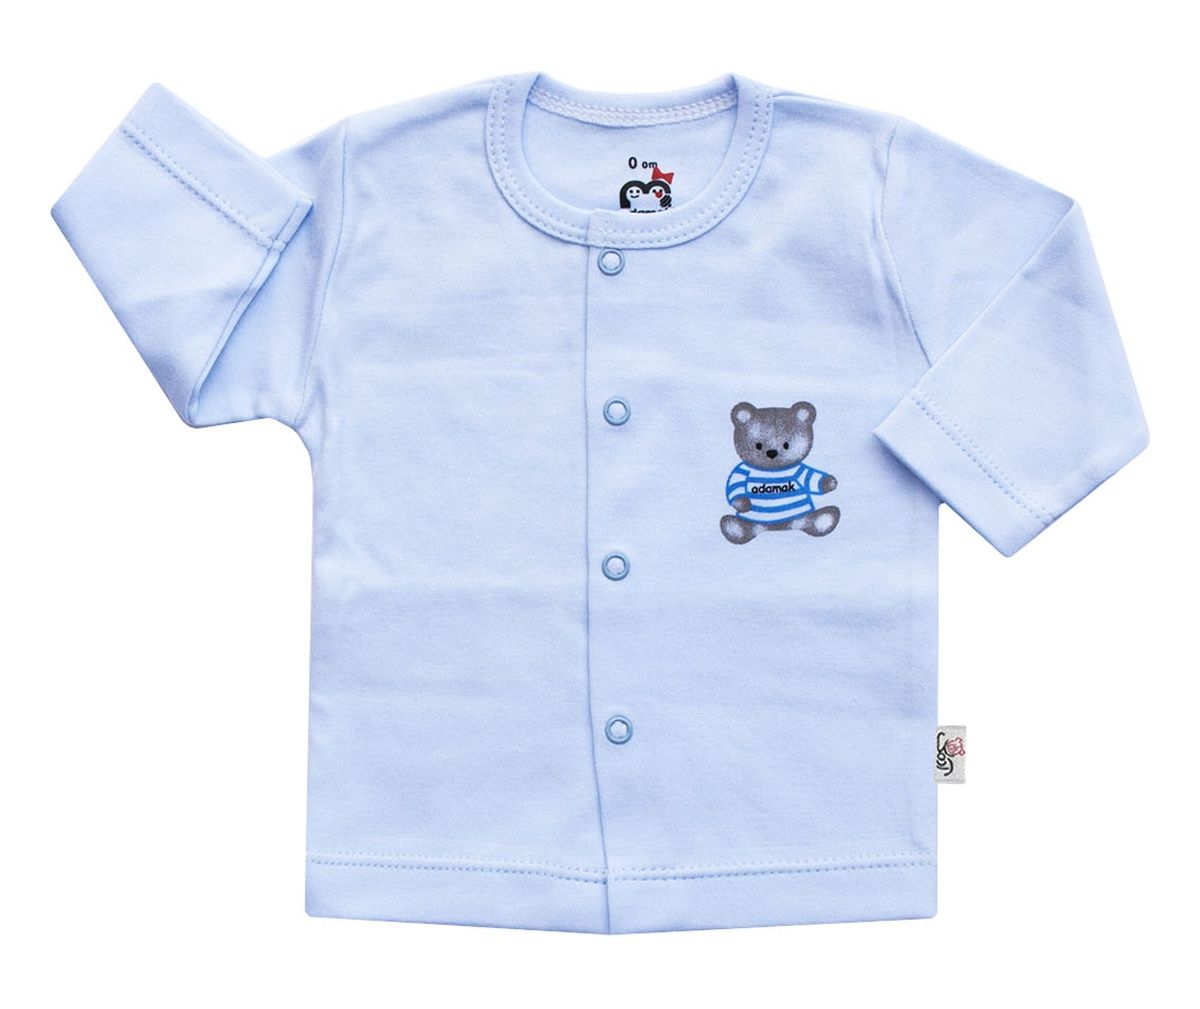 بلوز نوزادی آدمک طرح خرس رنگ آبی -  - 1